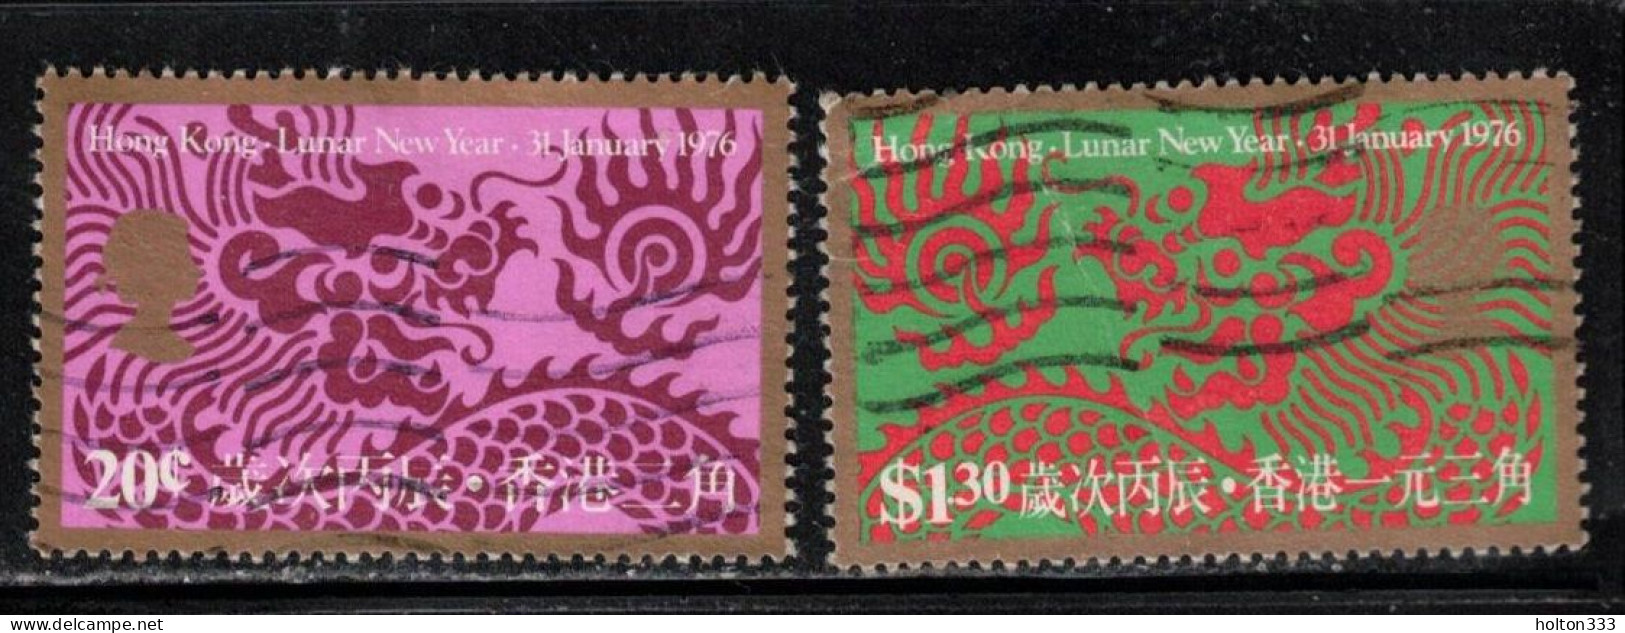 HONG KONG Scott # 312-13 Used - Lunar New Year 1976 - Gebraucht